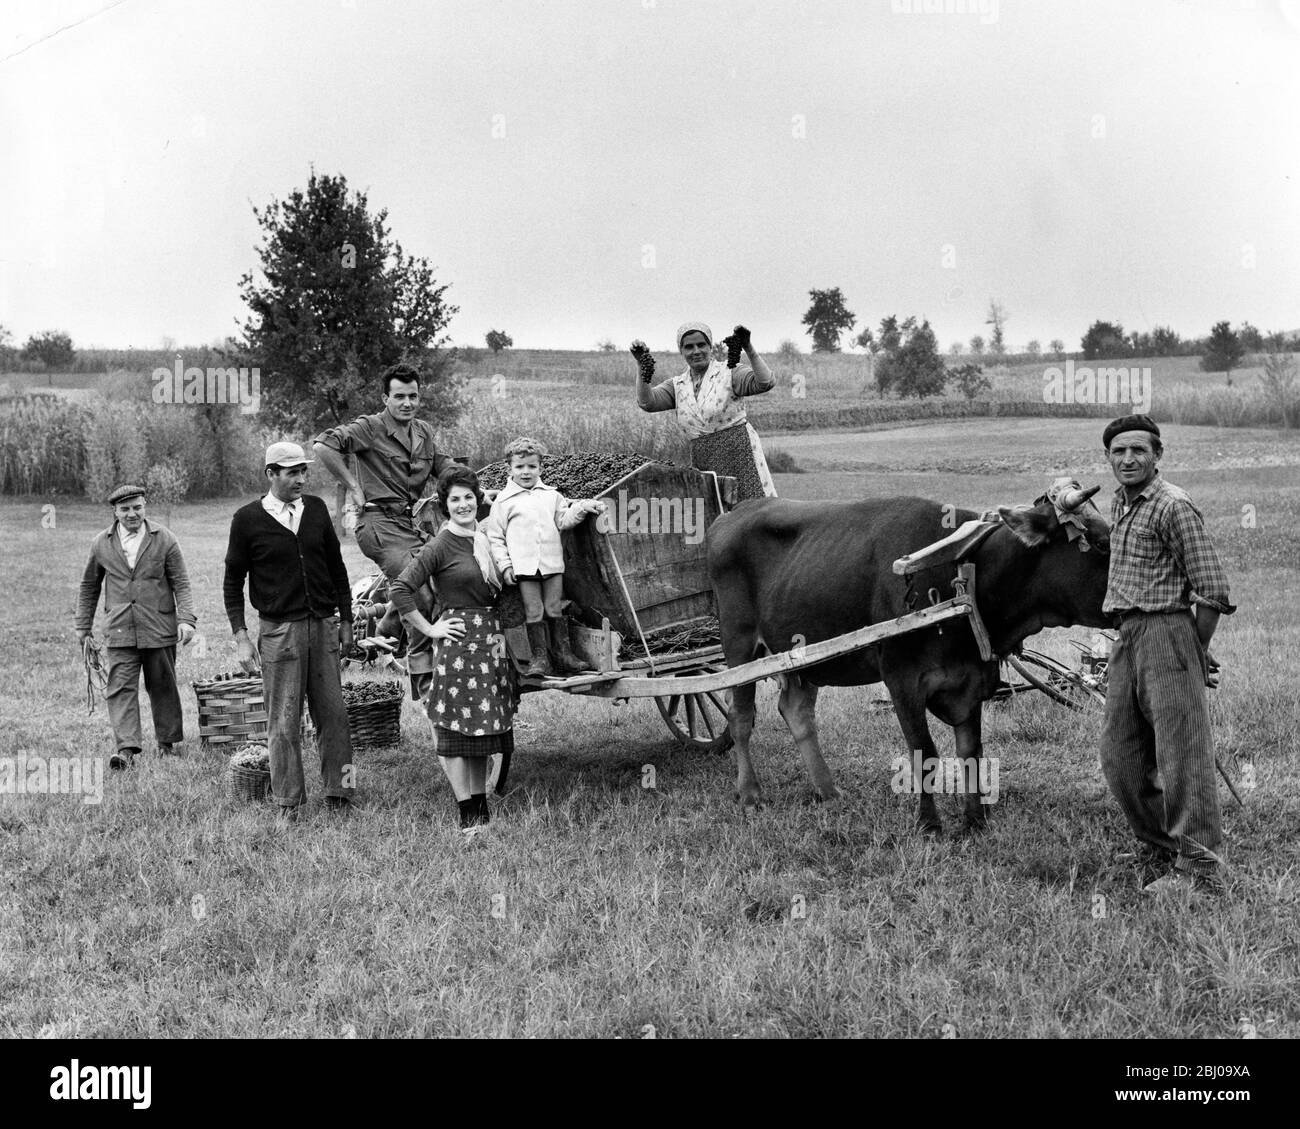 Signor Boeronig und seine Familie haben die Weinlese fast abgeschlossen, die mit einem geladenen Ochsenwagen vom Weinberg zu seinem Bauernhaus in Auroro Corso in der Gegend von Turin in Italien getragen wird - 19. Oktober 1962 Stockfoto